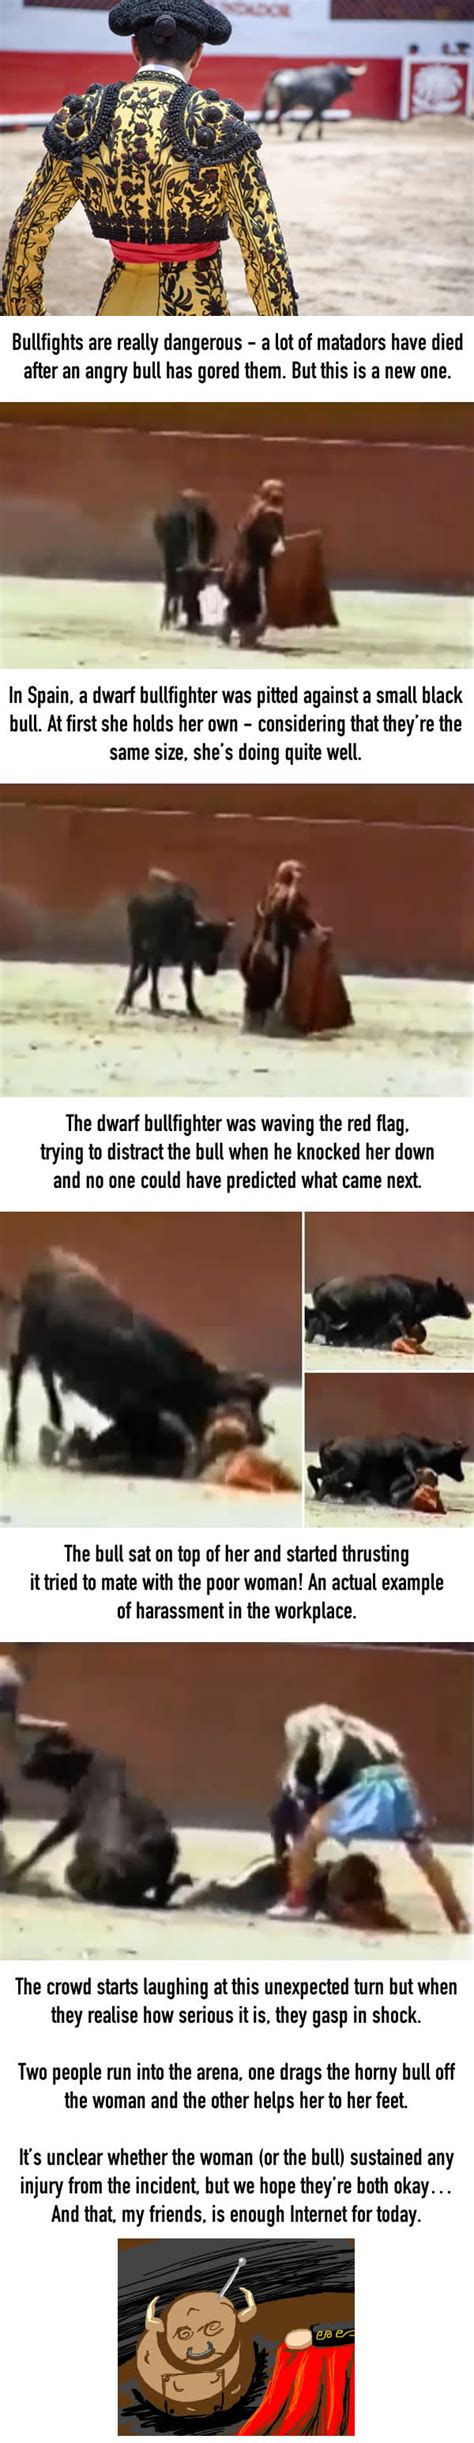 Shocking Moment Bull Mounts Female Dwarf Bullfighter 9gag